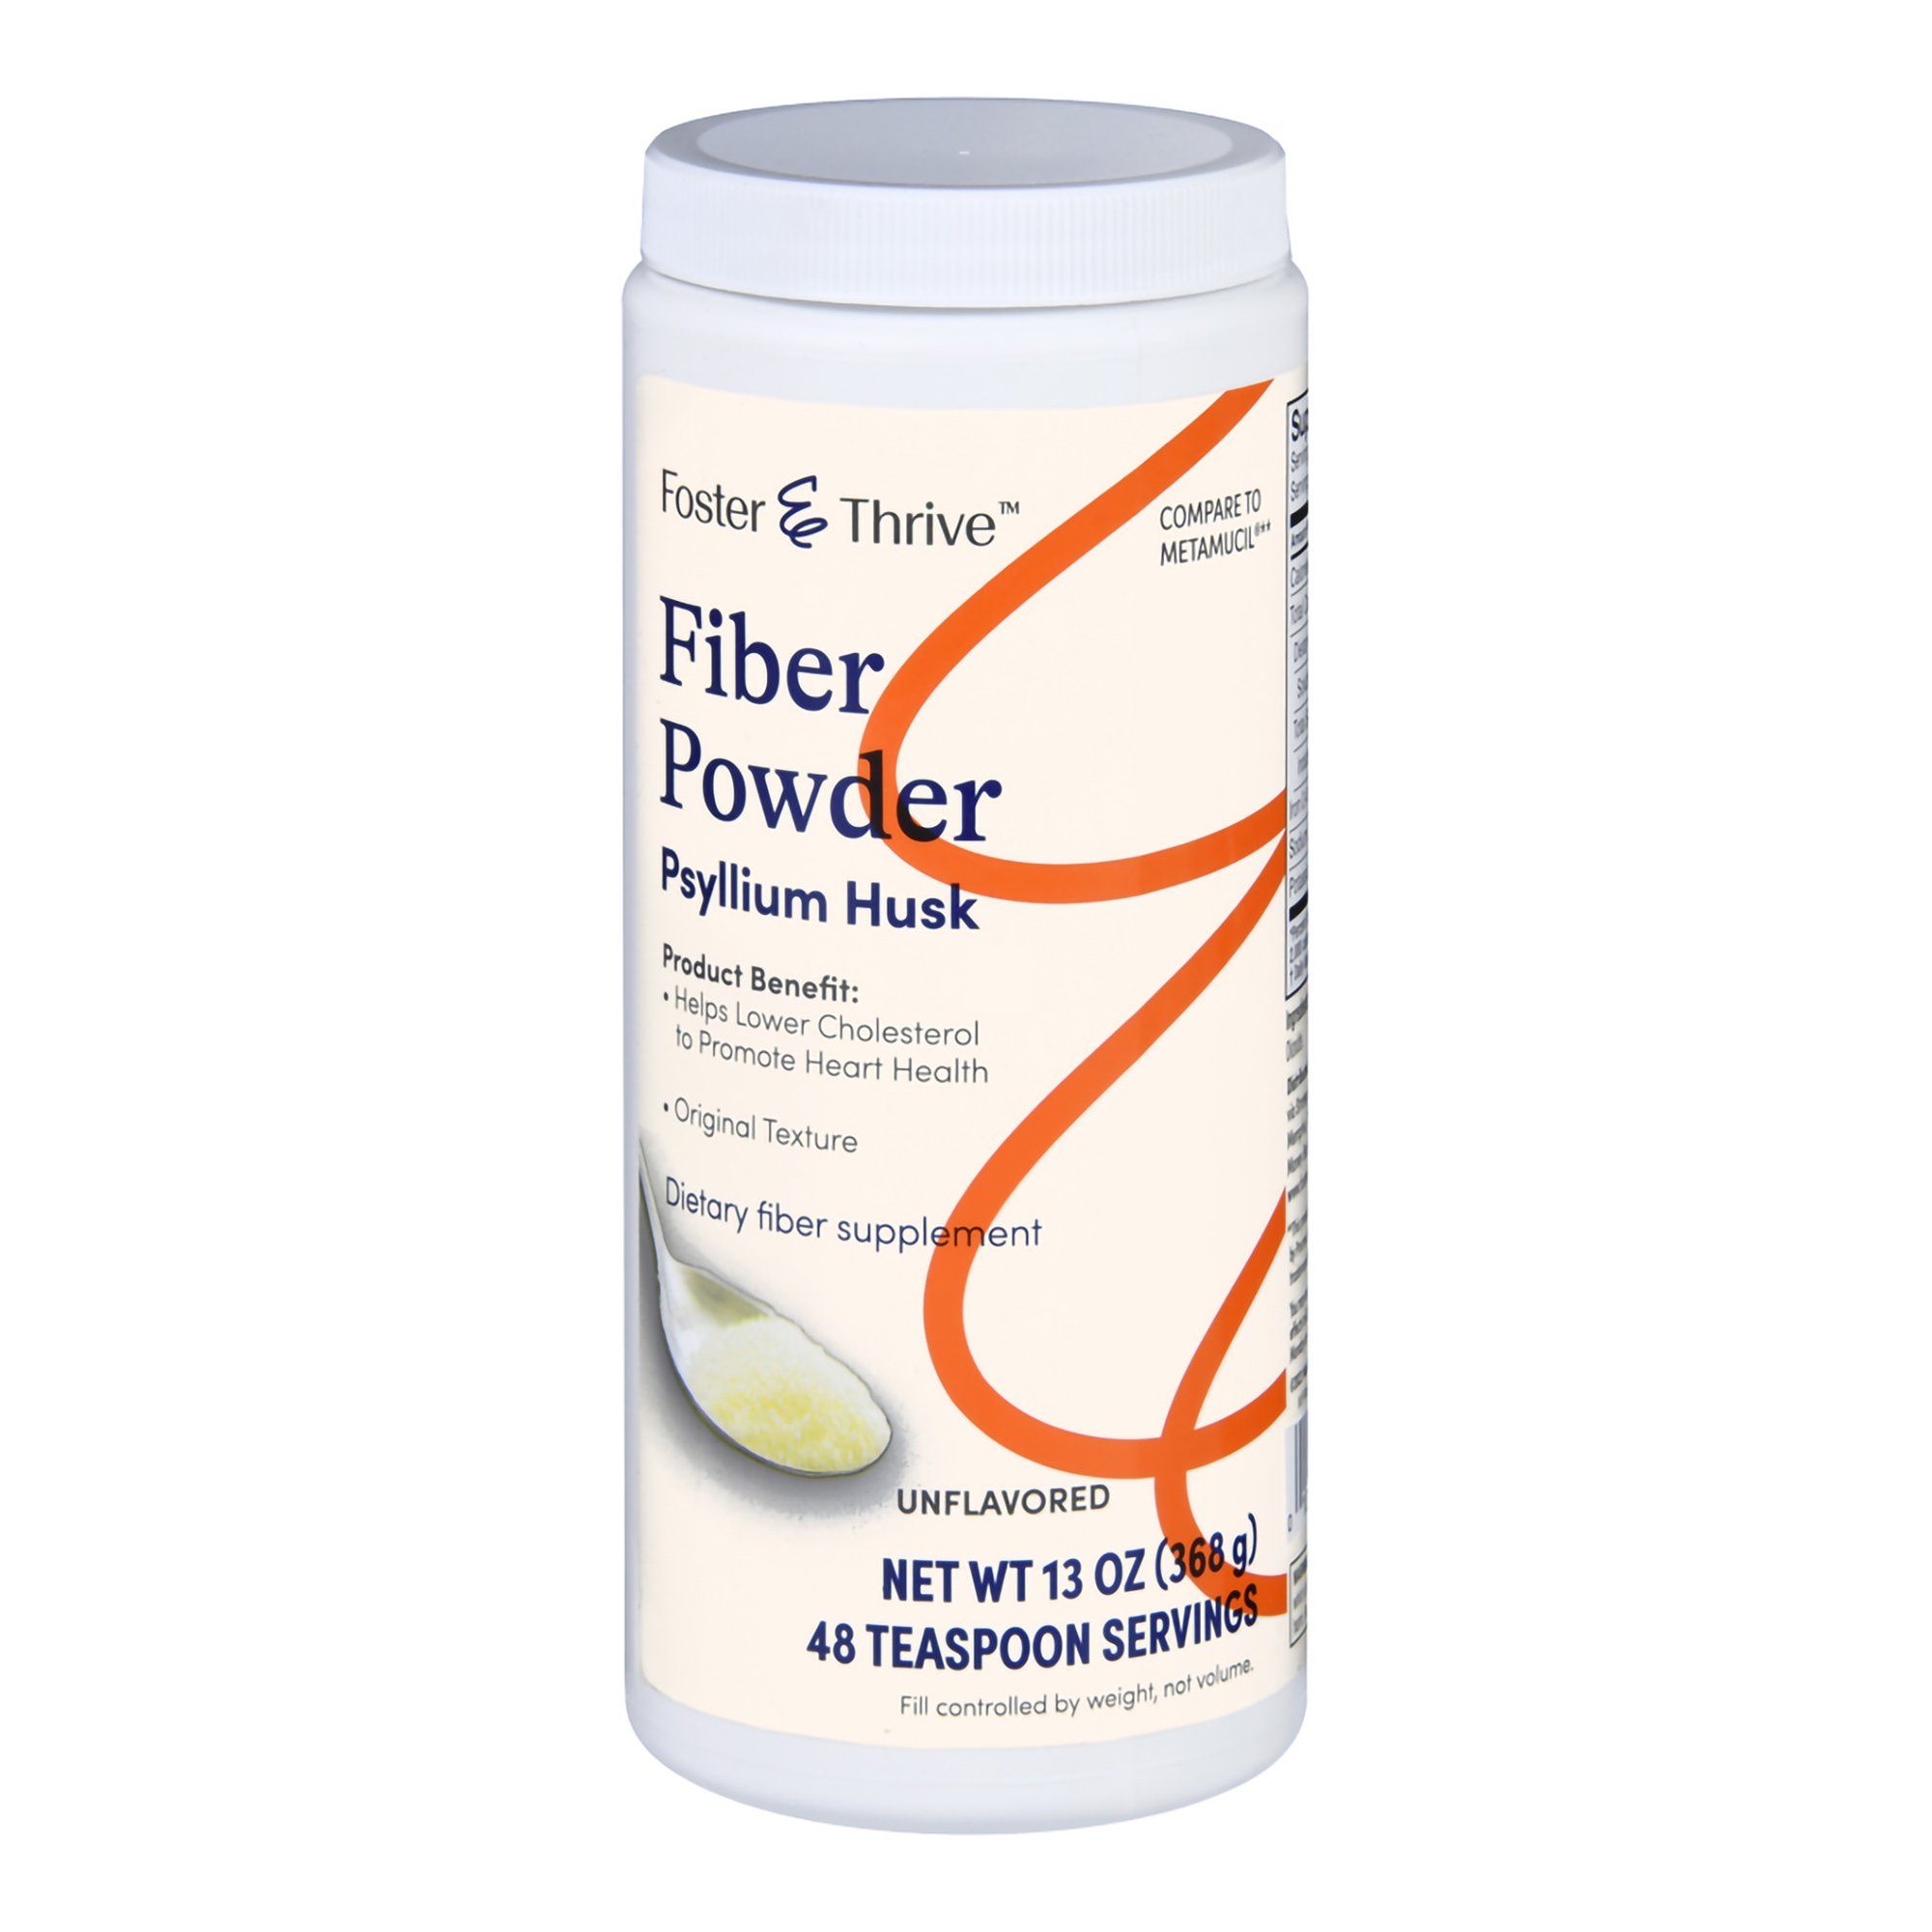 Foster & Thrive Fiber Powder, Original Texture, Unflavored - 13 oz